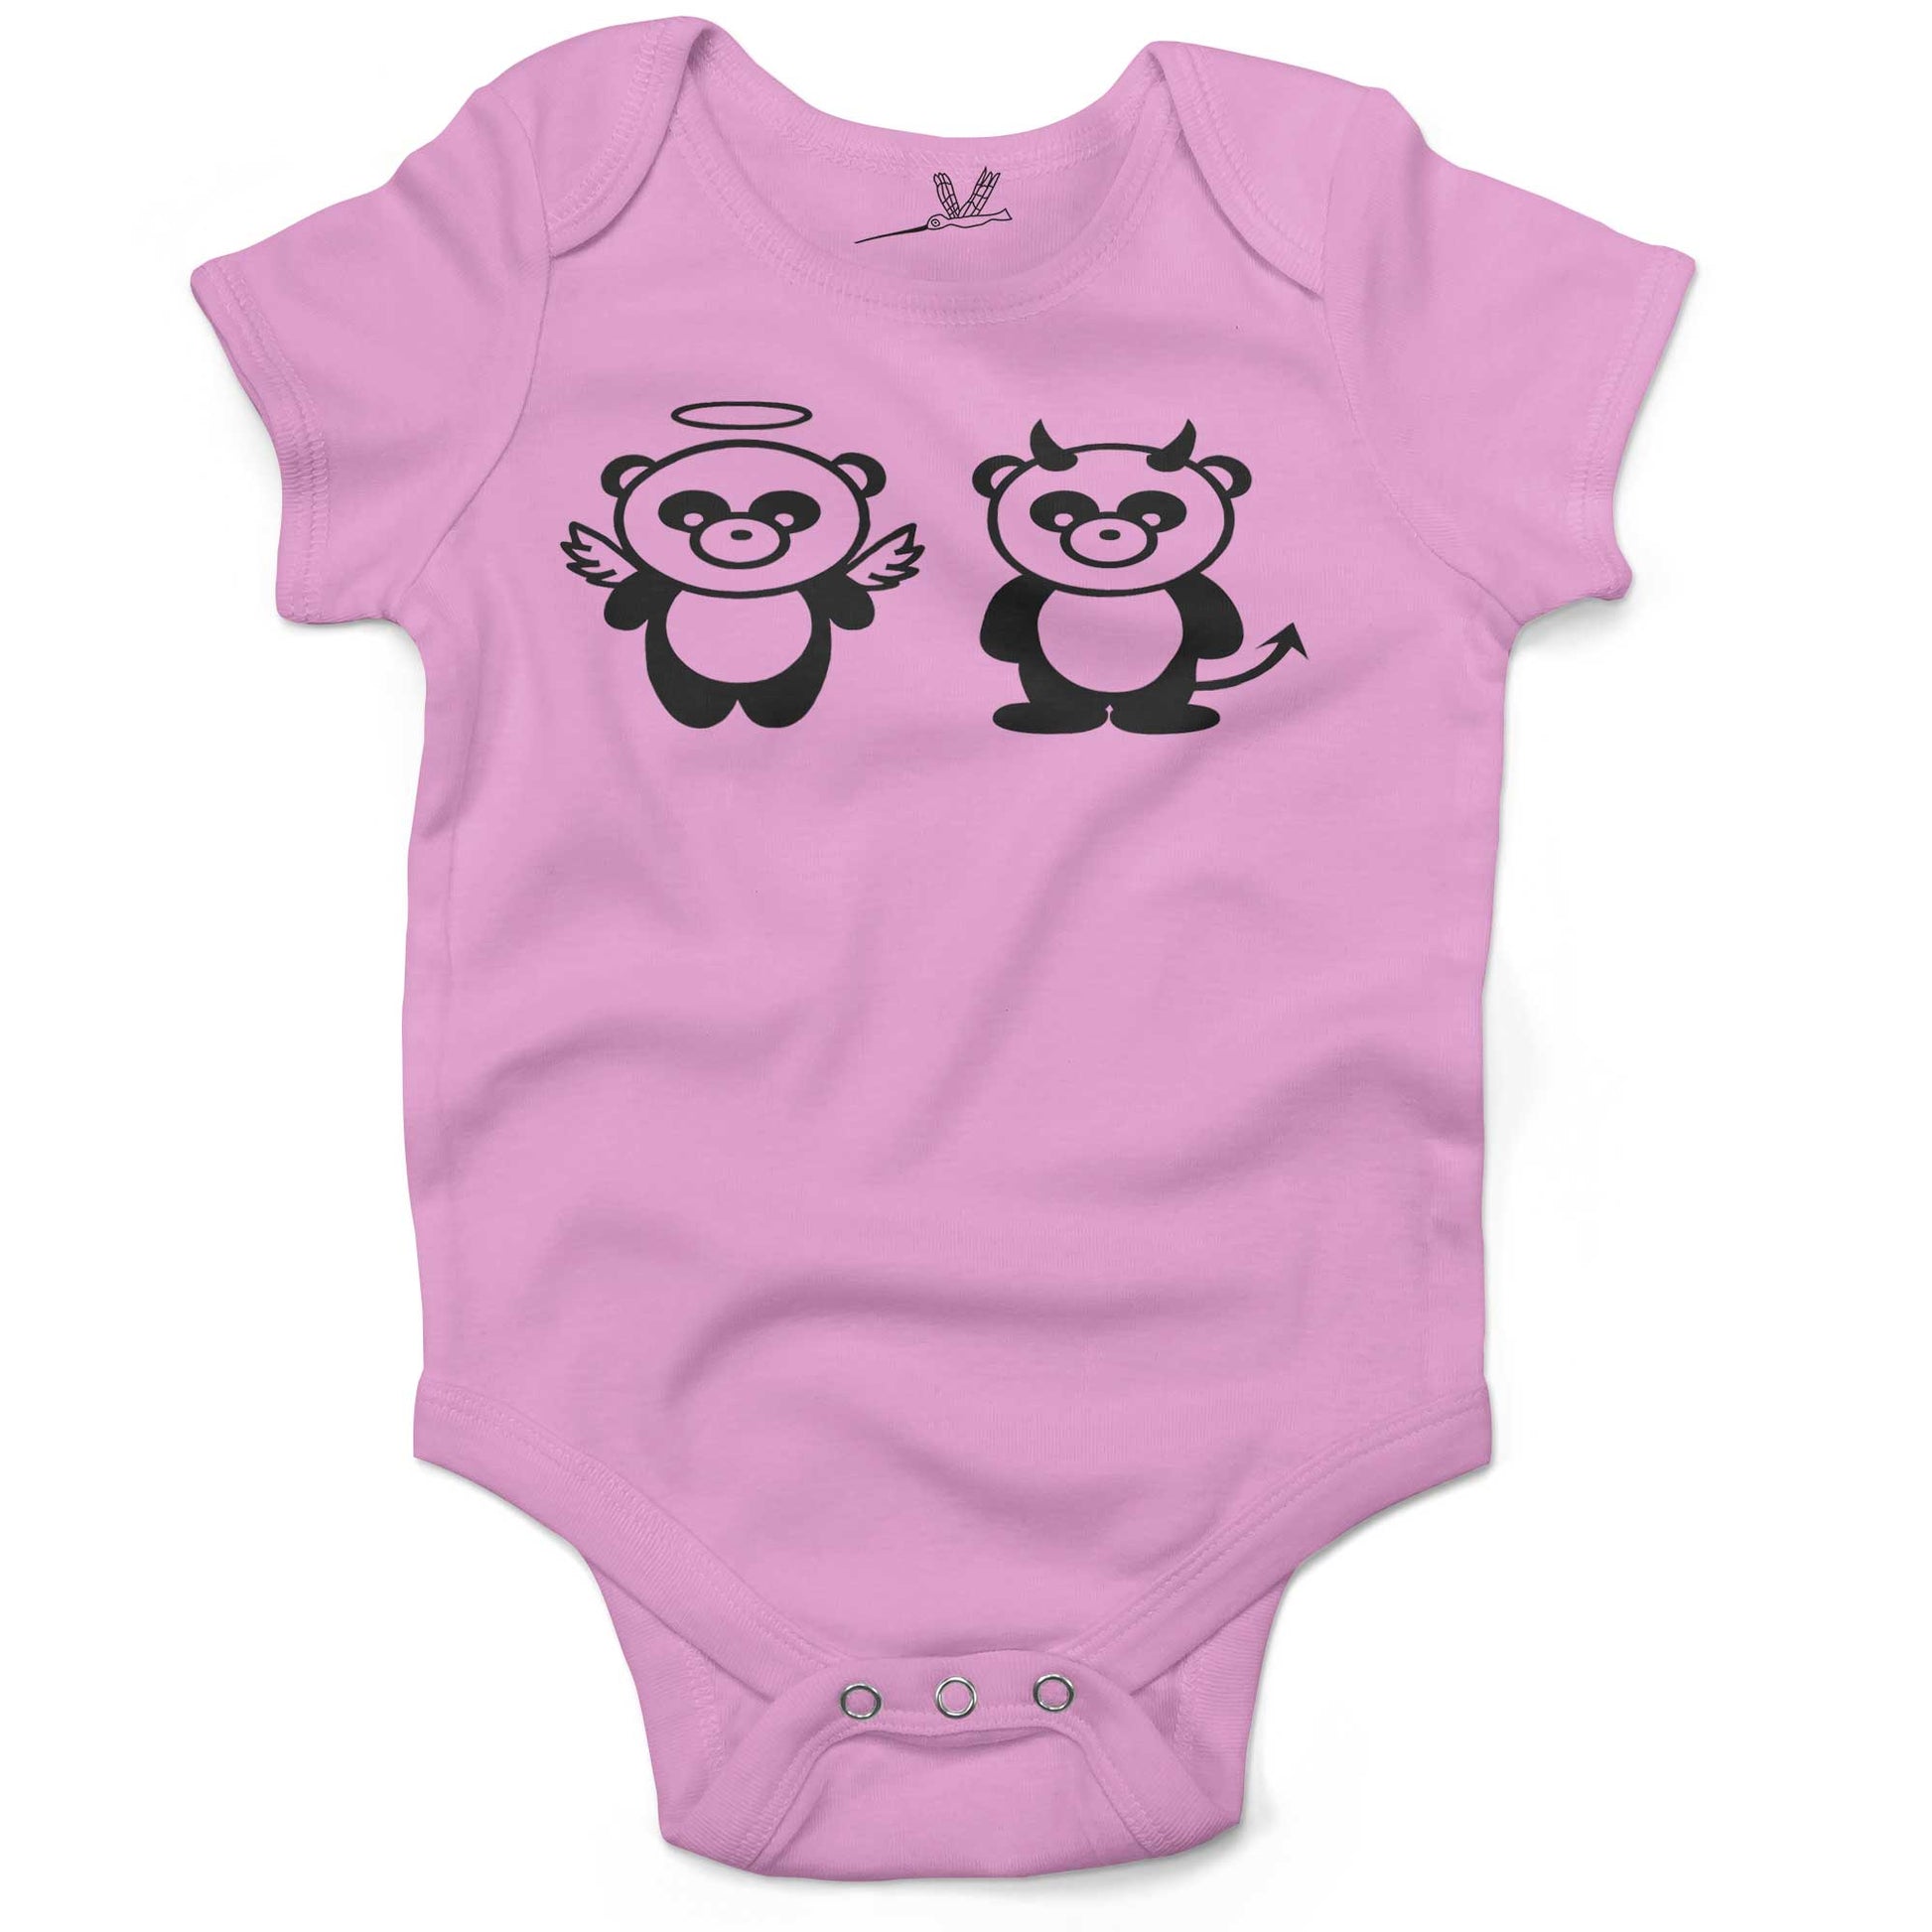 Good Panda, Bad Panda Infant Bodysuit or Raglan Tee-Organic Pink-3-6 months